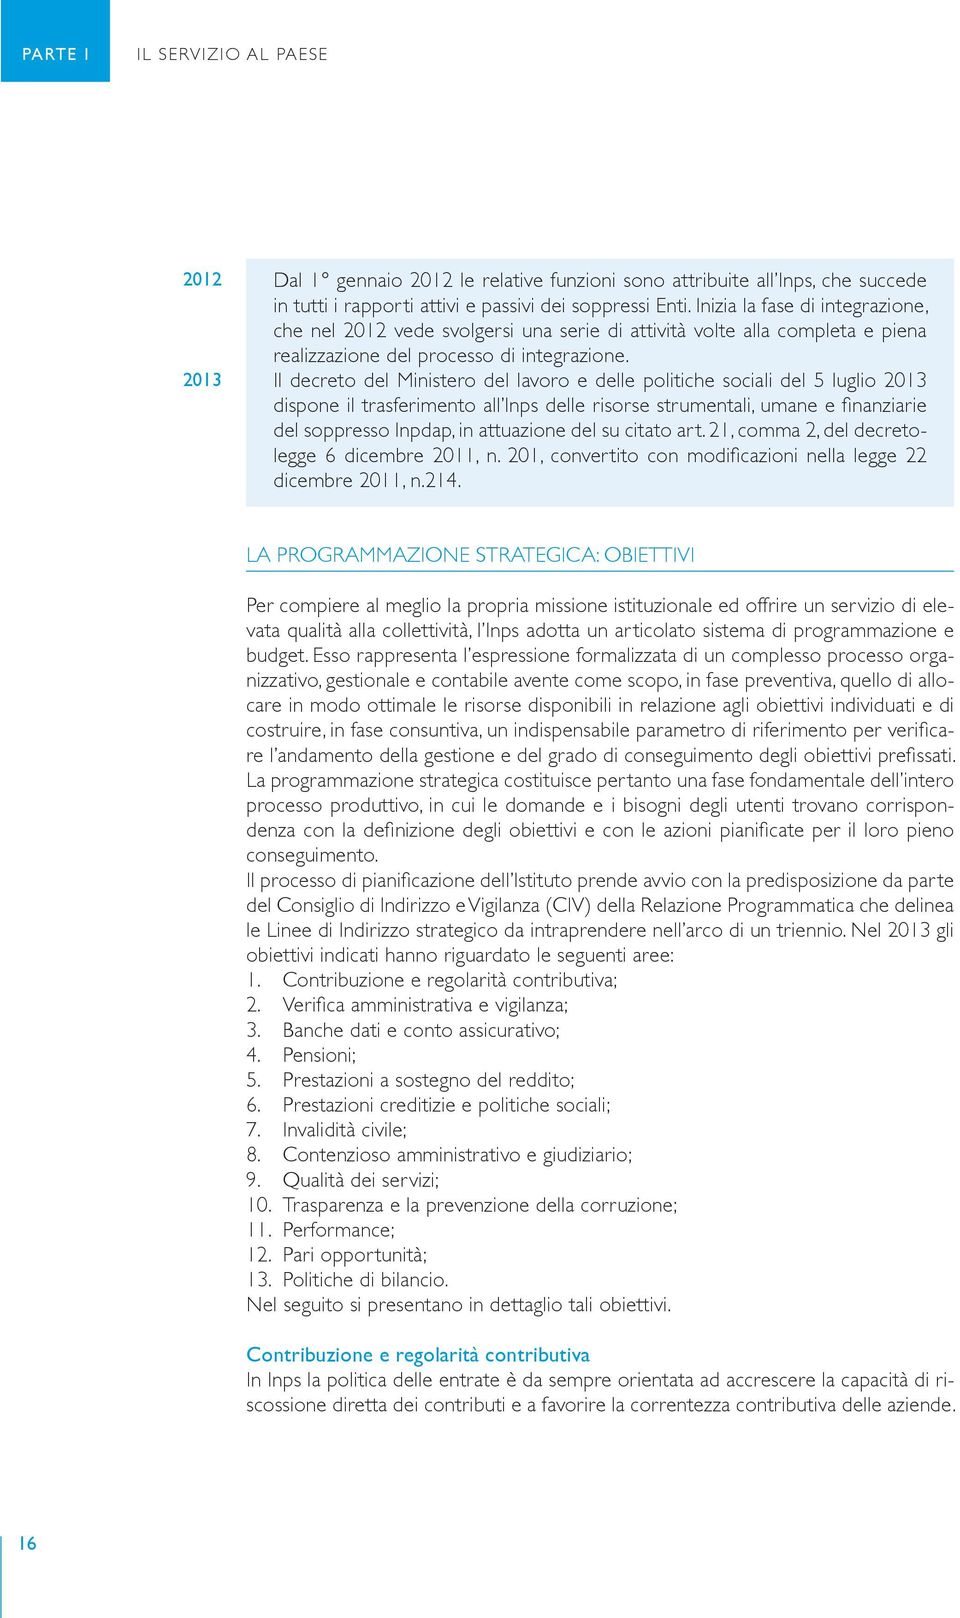 Il decreto del Ministero del lavoro e delle politiche sociali del 5 luglio 2013 dispone il trasferimento all Inps delle risorse strumentali, umane e finanziarie del soppresso Inpdap, in attuazione